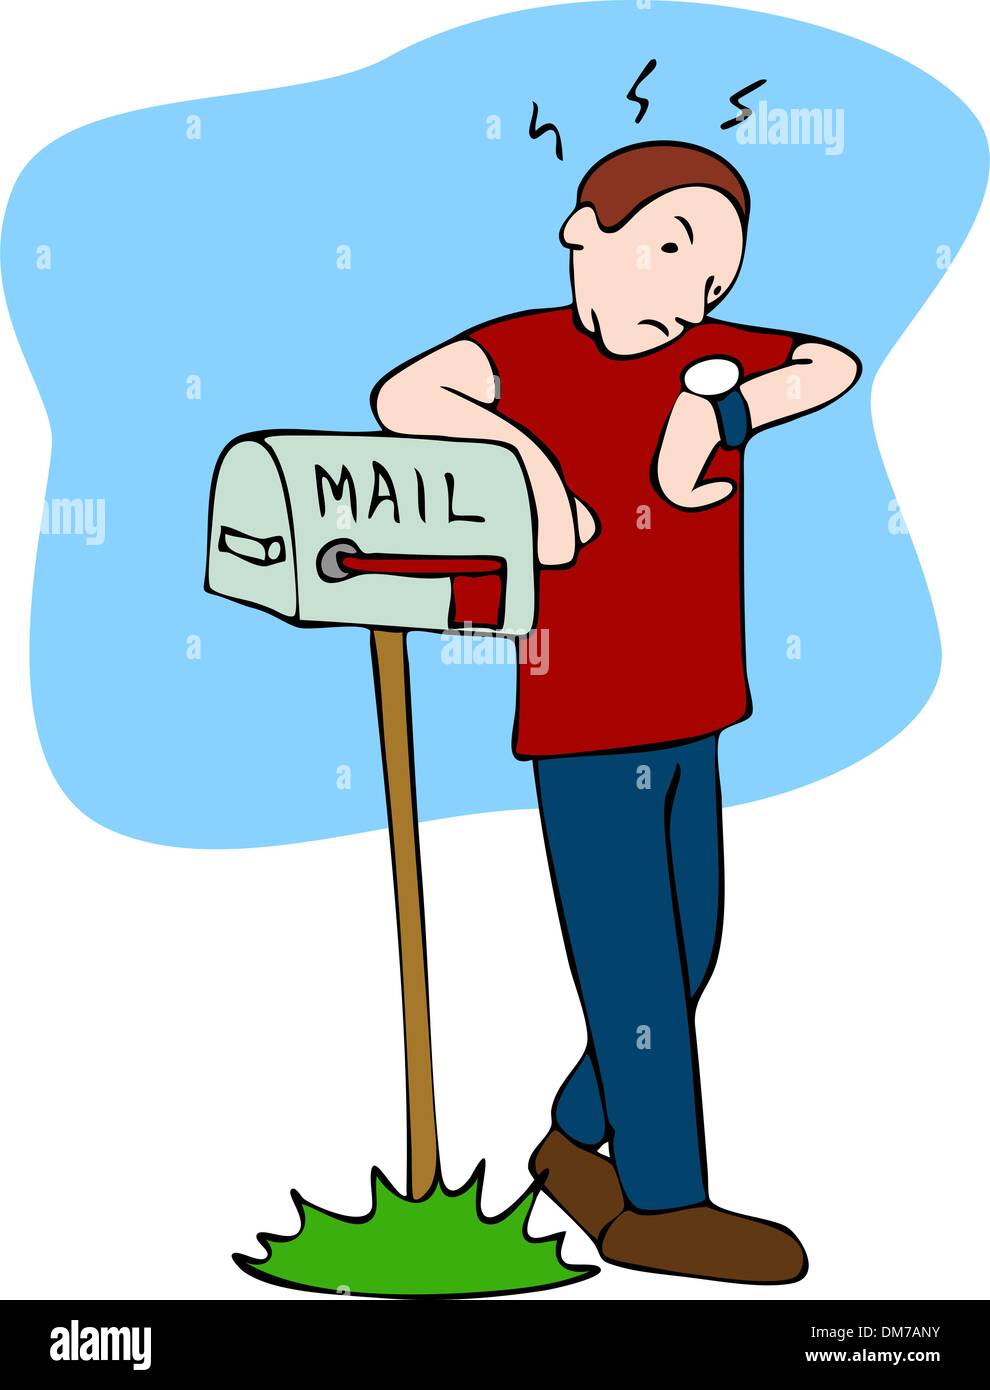 waiting-for-mailman-DM7ANY.jpg